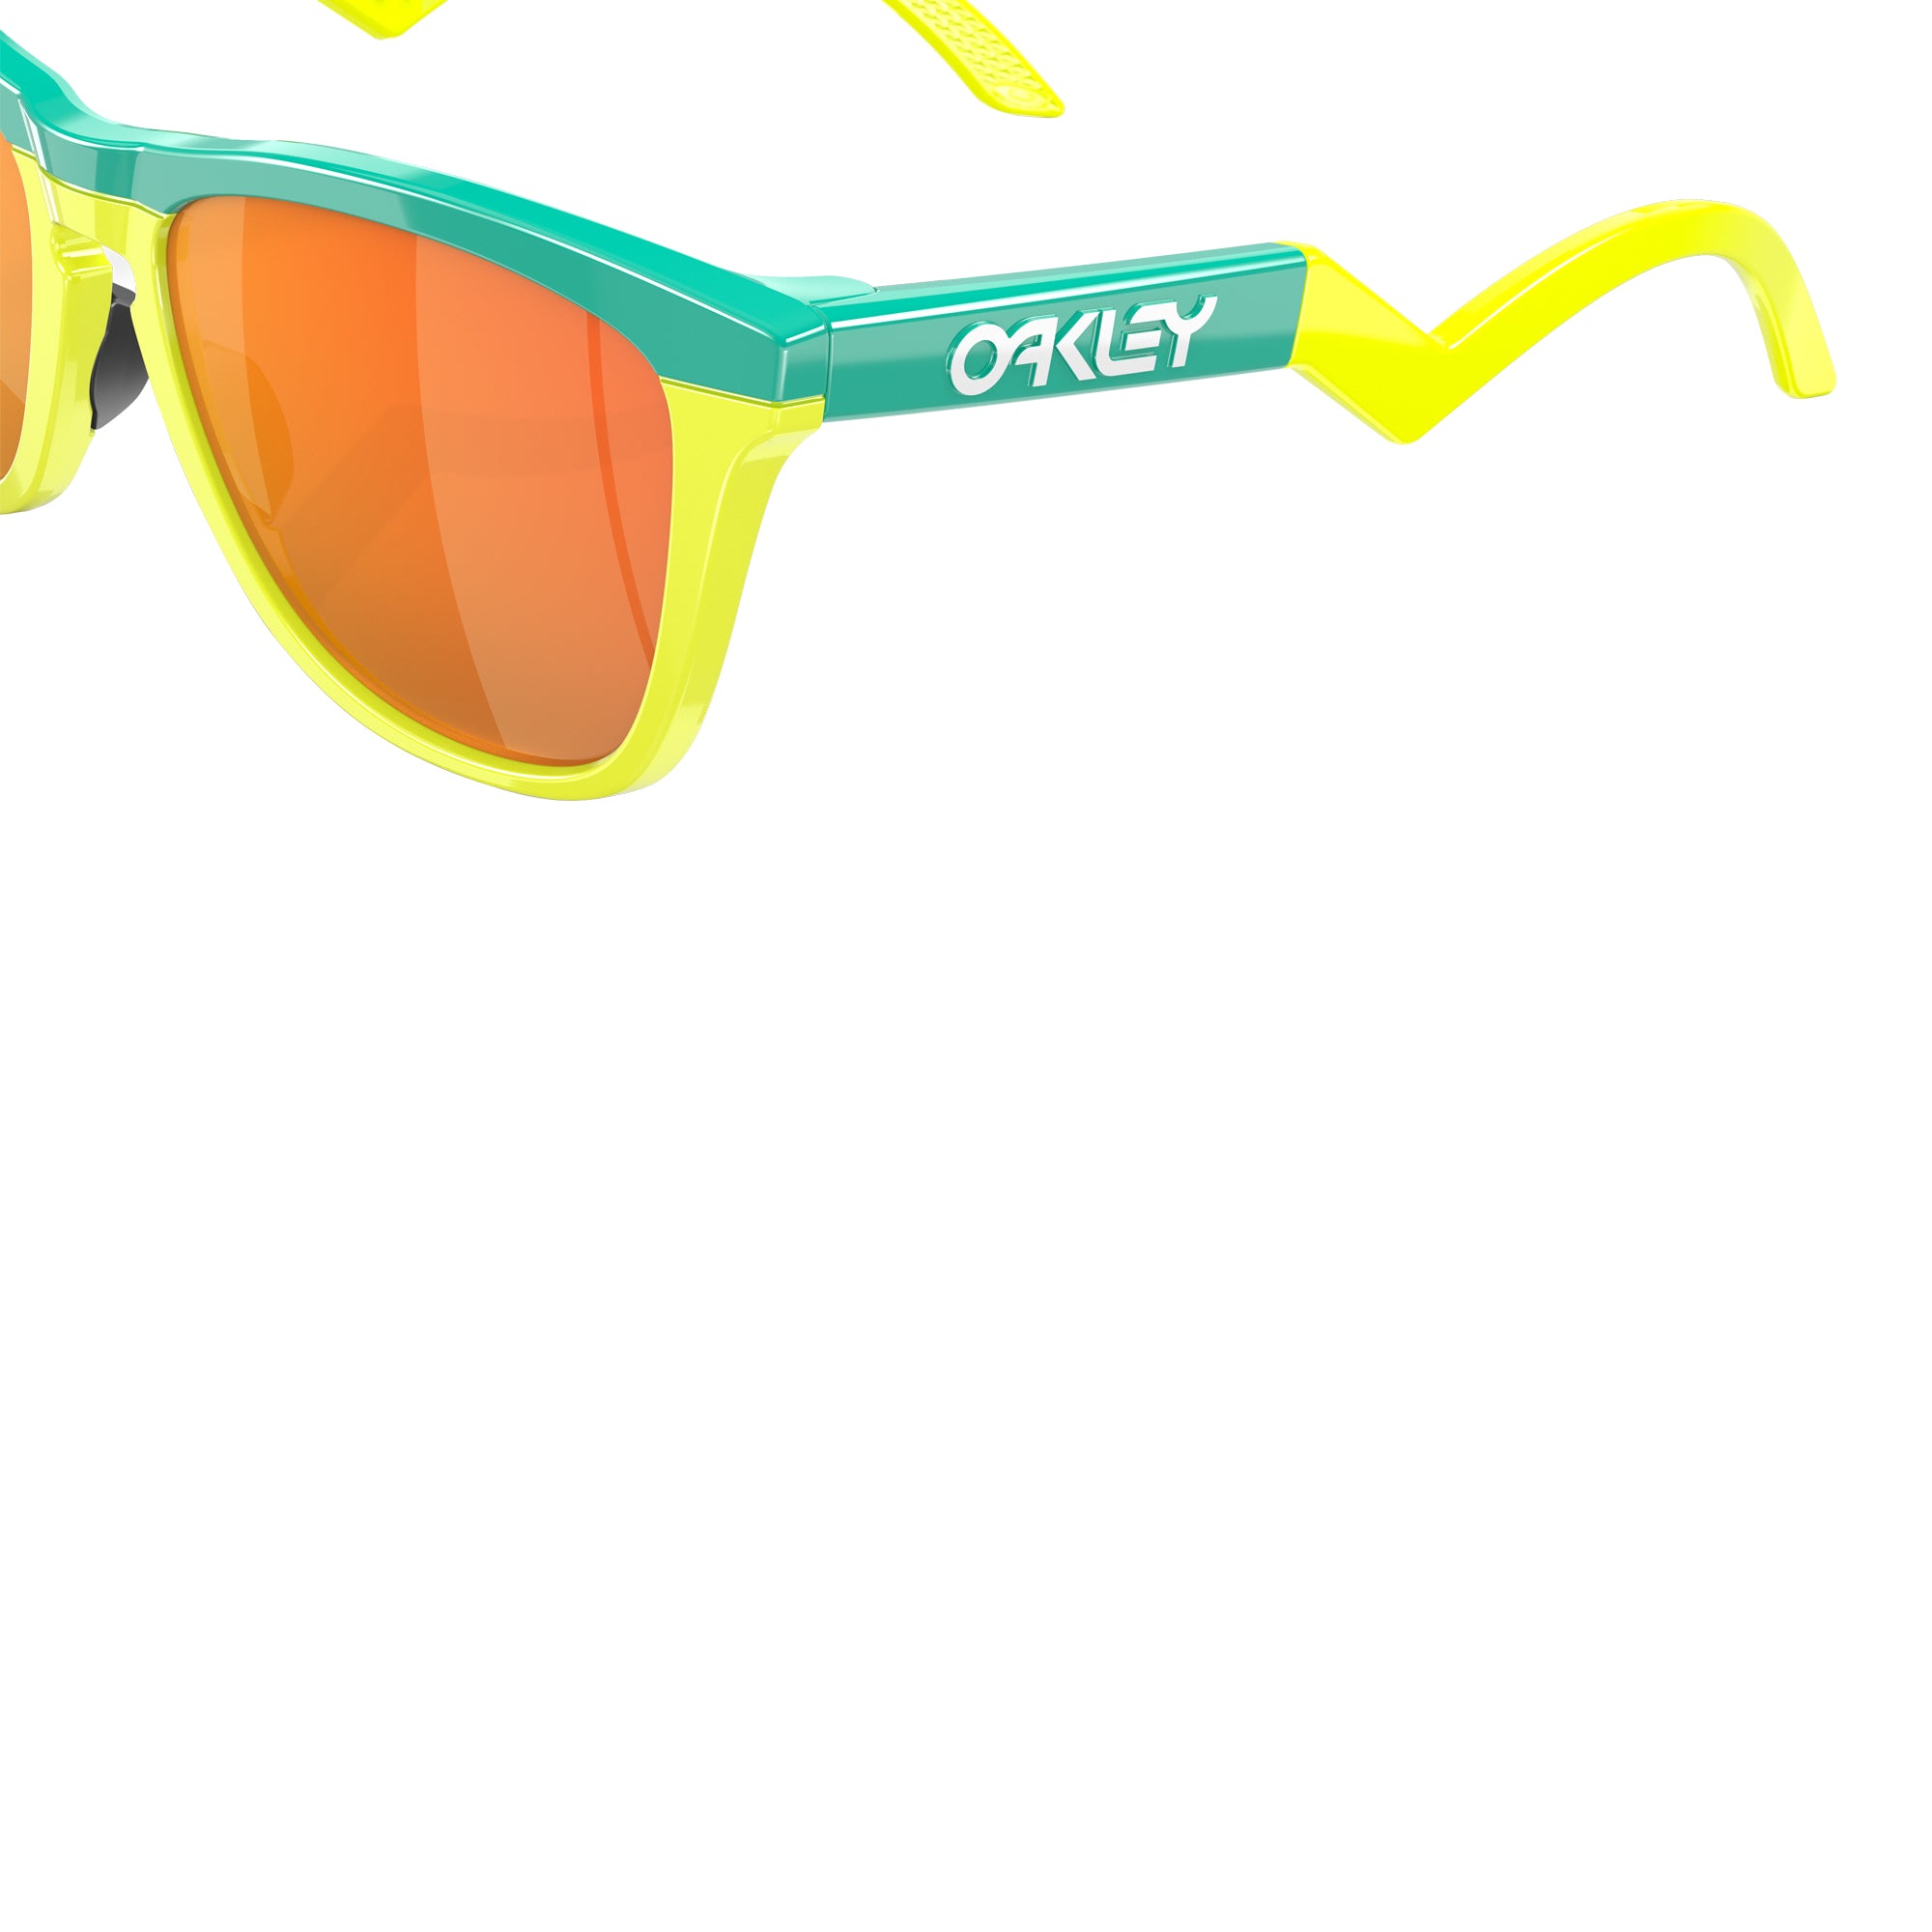 Brand Spotlight: Oakley